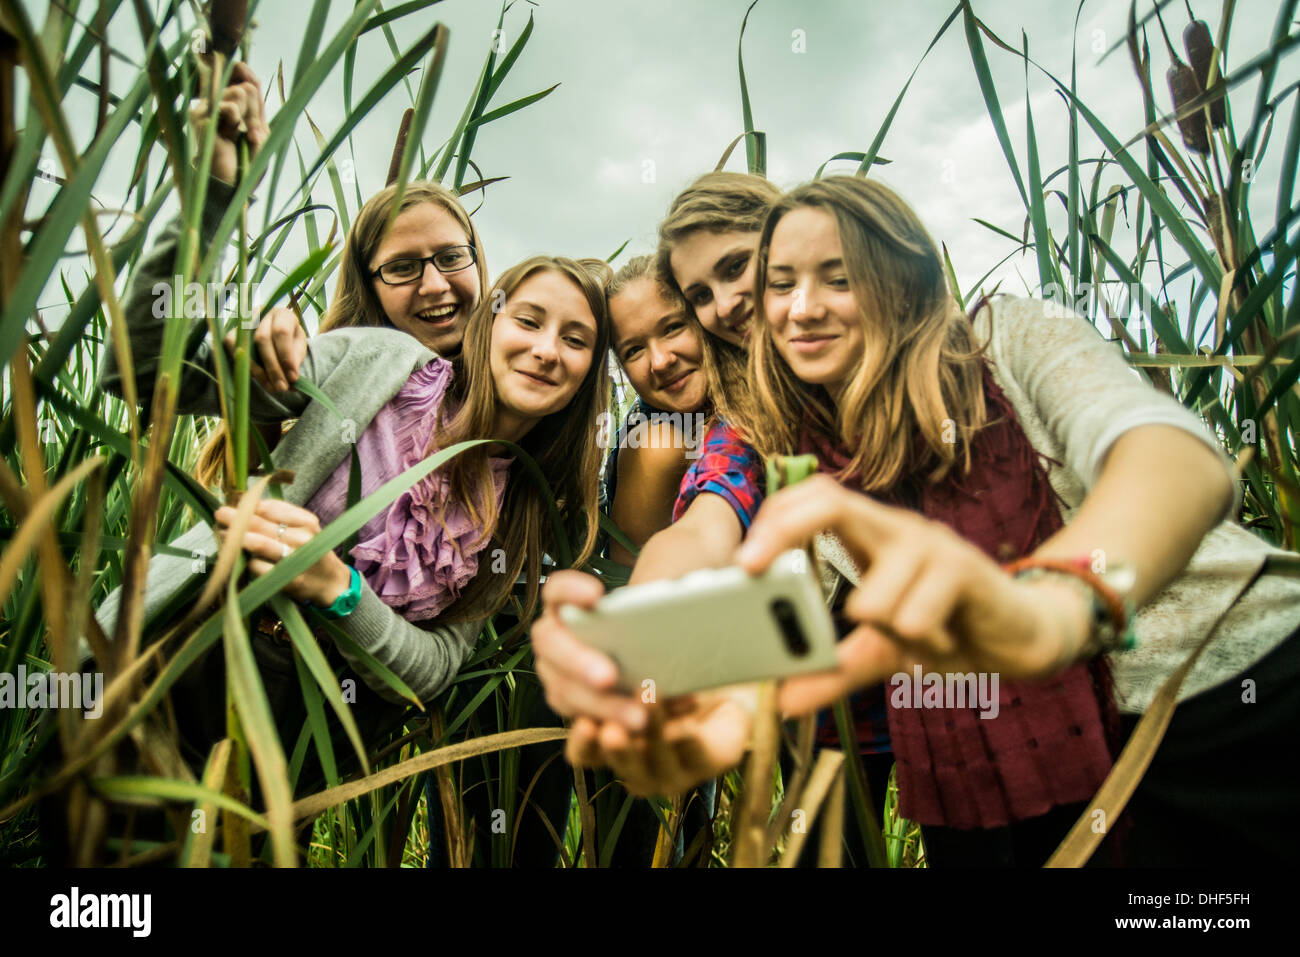 Cinco mujeres jóvenes teniendo en pantanos de autorretrato Foto de stock